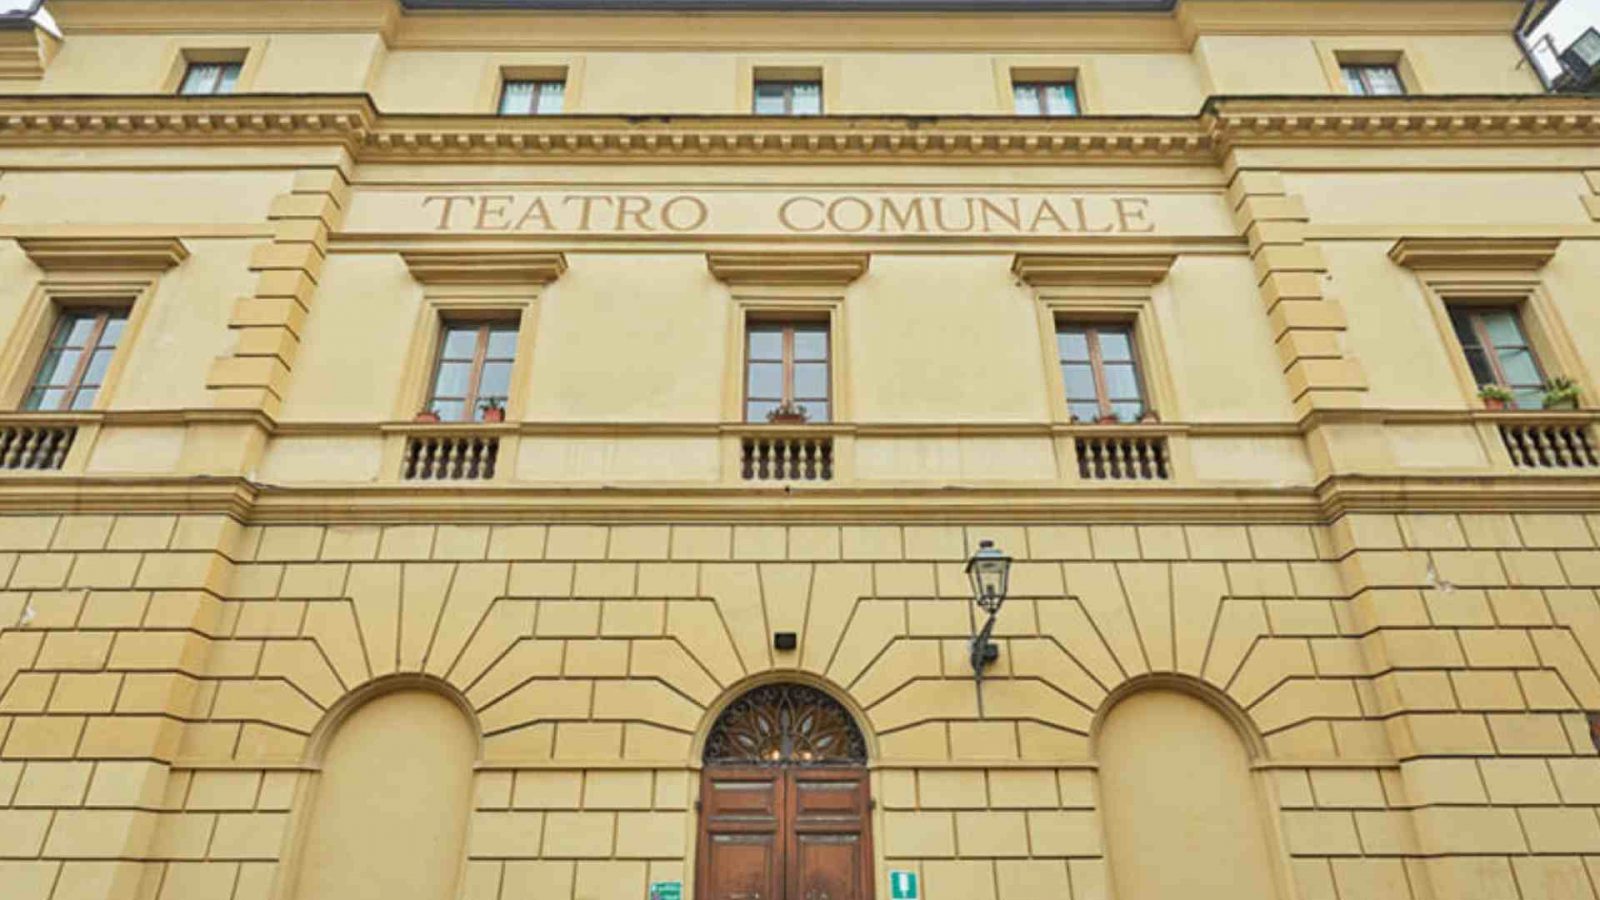 La facciata del Teatro Comunale Giuseppe Manini di Narni